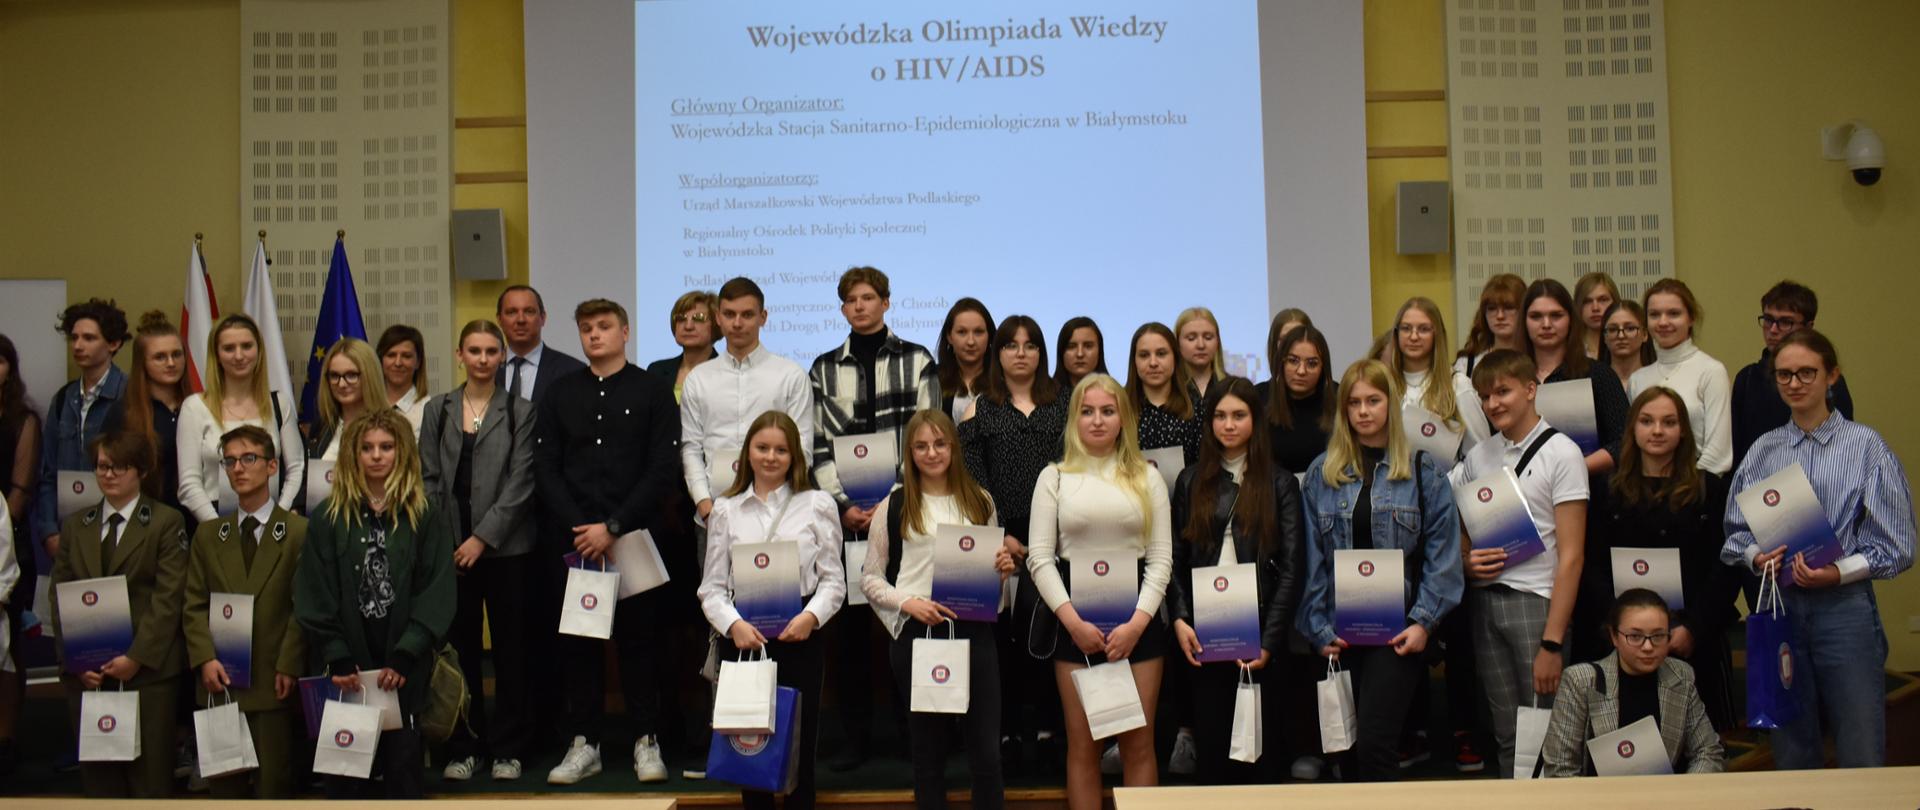 Zdjęcia przedstawiają uczestniczki i uczestników olimpiady, młodzież ze szkół ponadpodstawowych województwa podlaskiego, podczas zmagań przy pisaniu testu w czasie trwania olimpiady w Sali konferencyjnej Urzędu Marszałkowskiego w Białymstoku. 